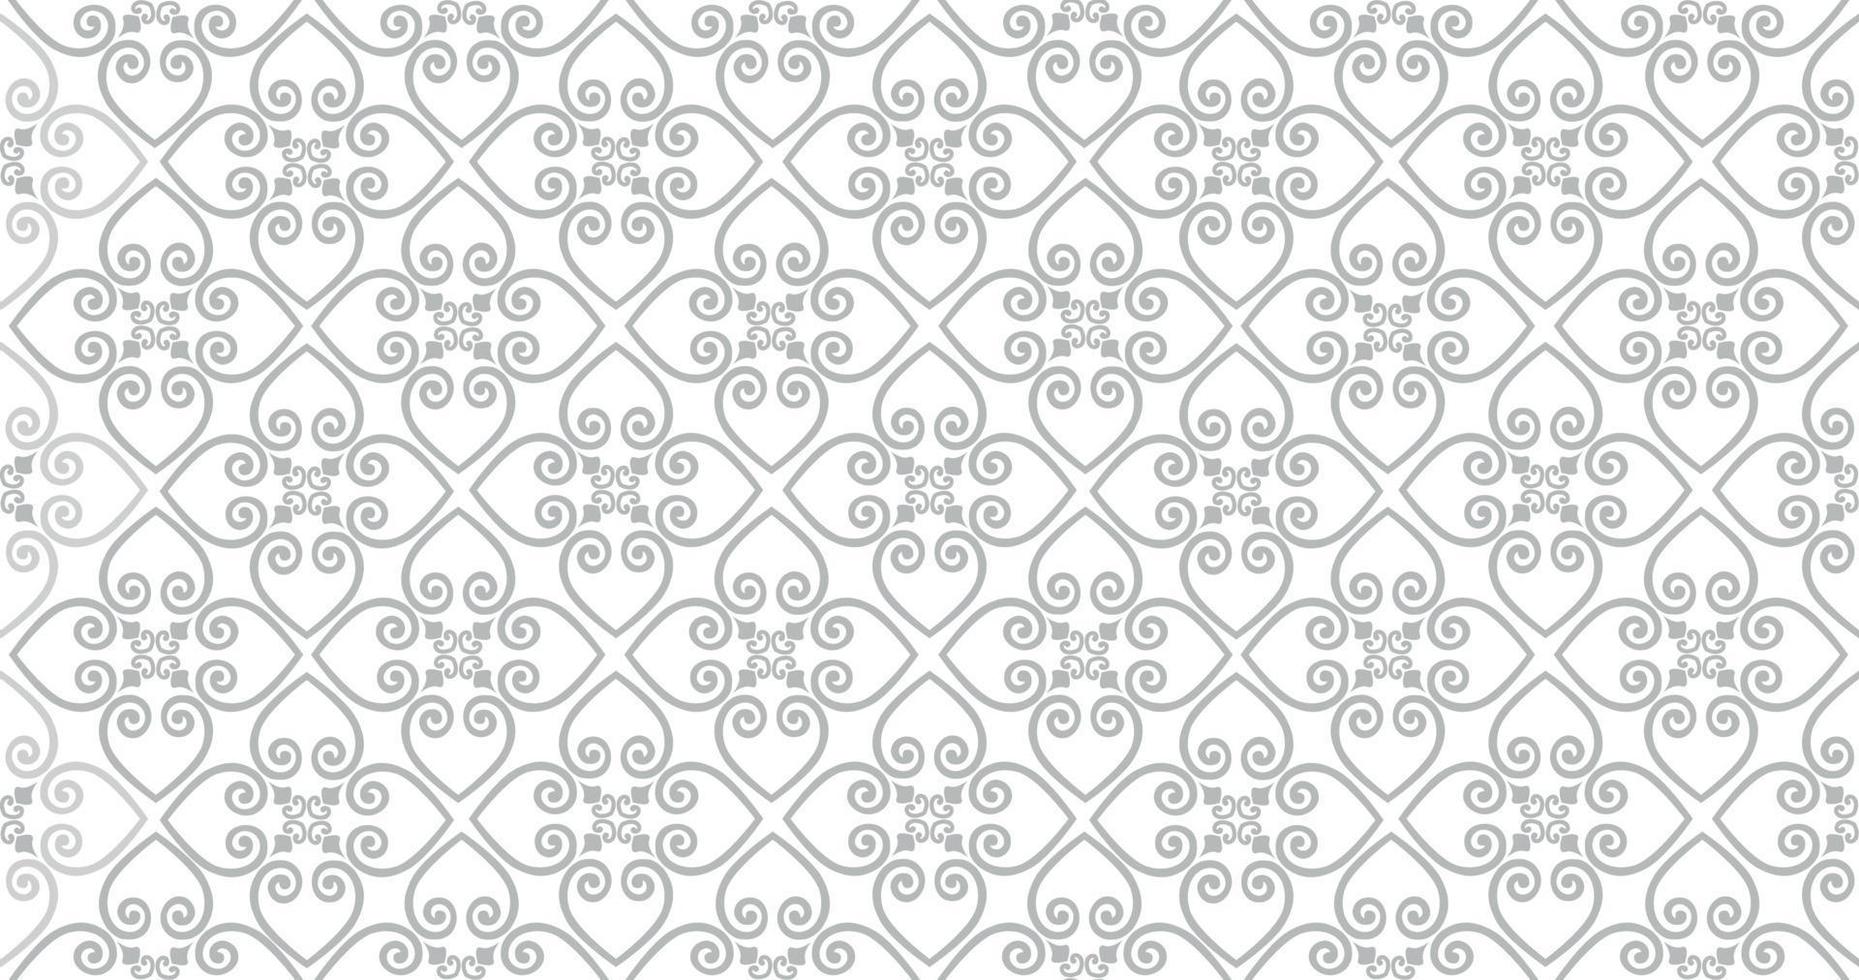 abstrakt sömlösa mönster. arabisk linje prydnad med geometriska former. linjär blommig prydnadsstruktur. konstnärlig bakgrund i arabisk orienterad textilstil. vektor